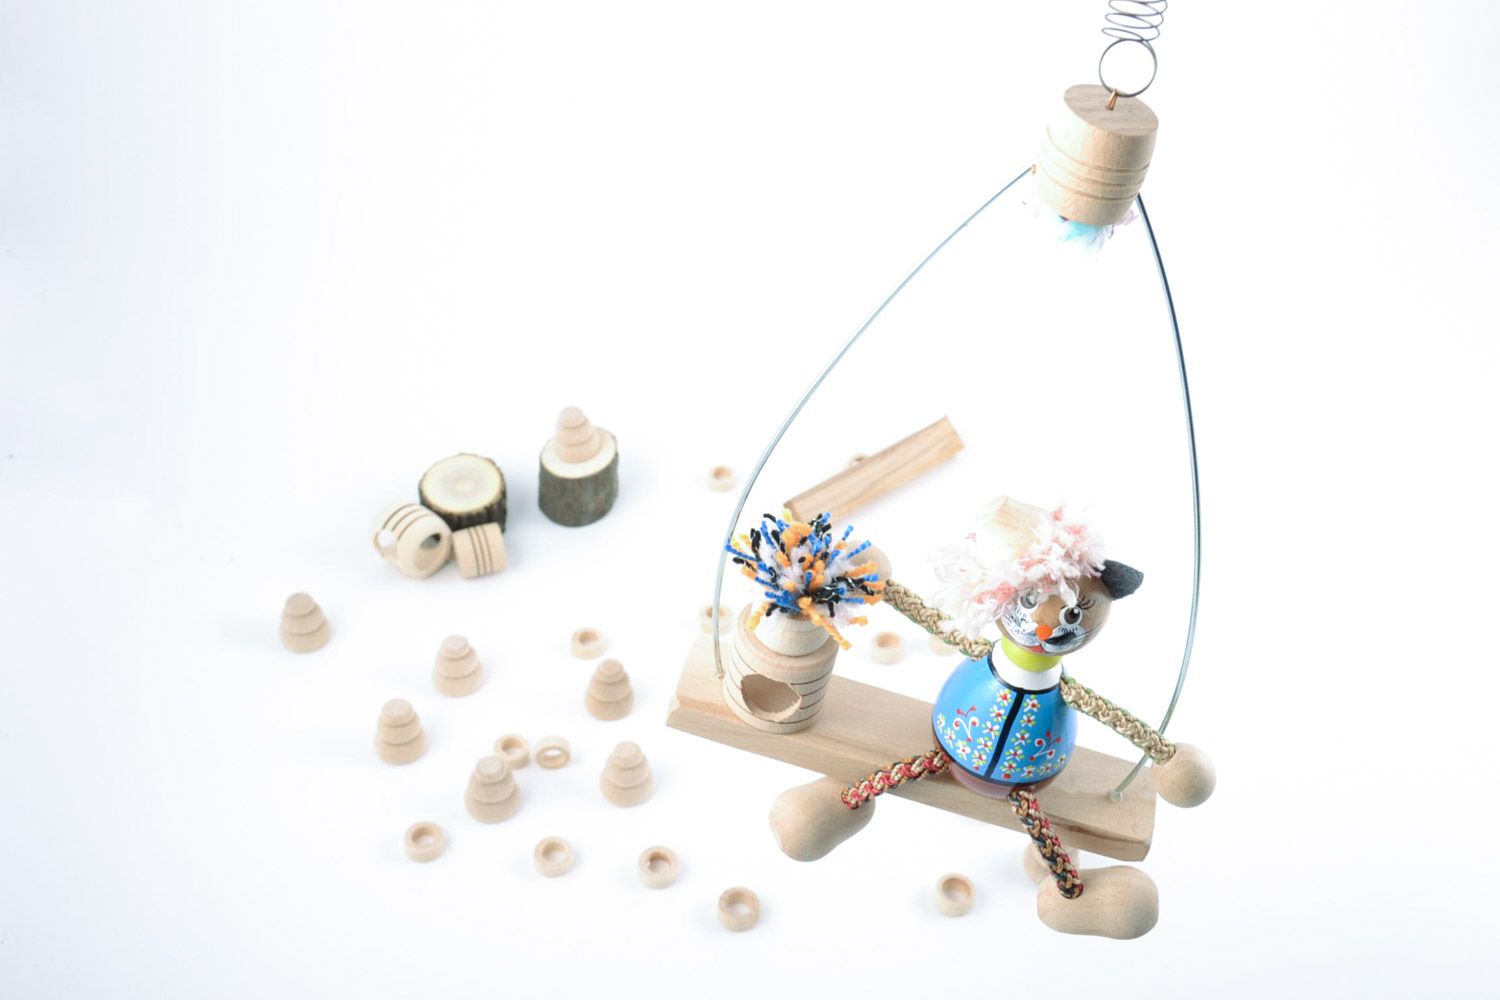 Designer handmade Spielzeug Kater aus Holz mit bunter Bemalung für kleines Kind  foto 2